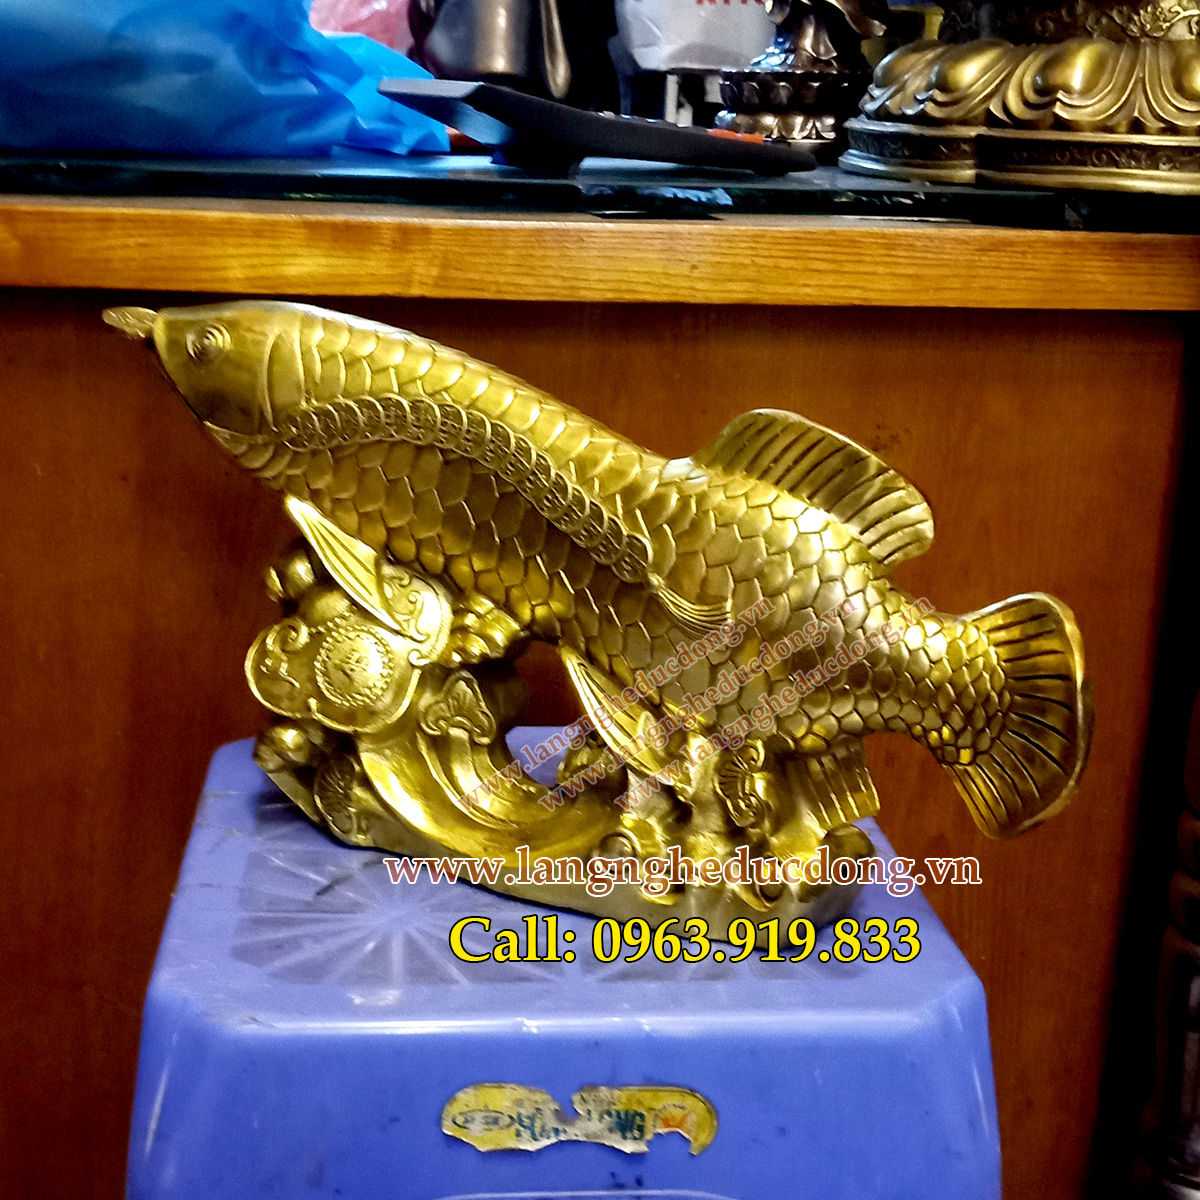 langngheducdong.vn - cá rồng, cá rồng bằng đồng, tượng cá rồng tài lộc